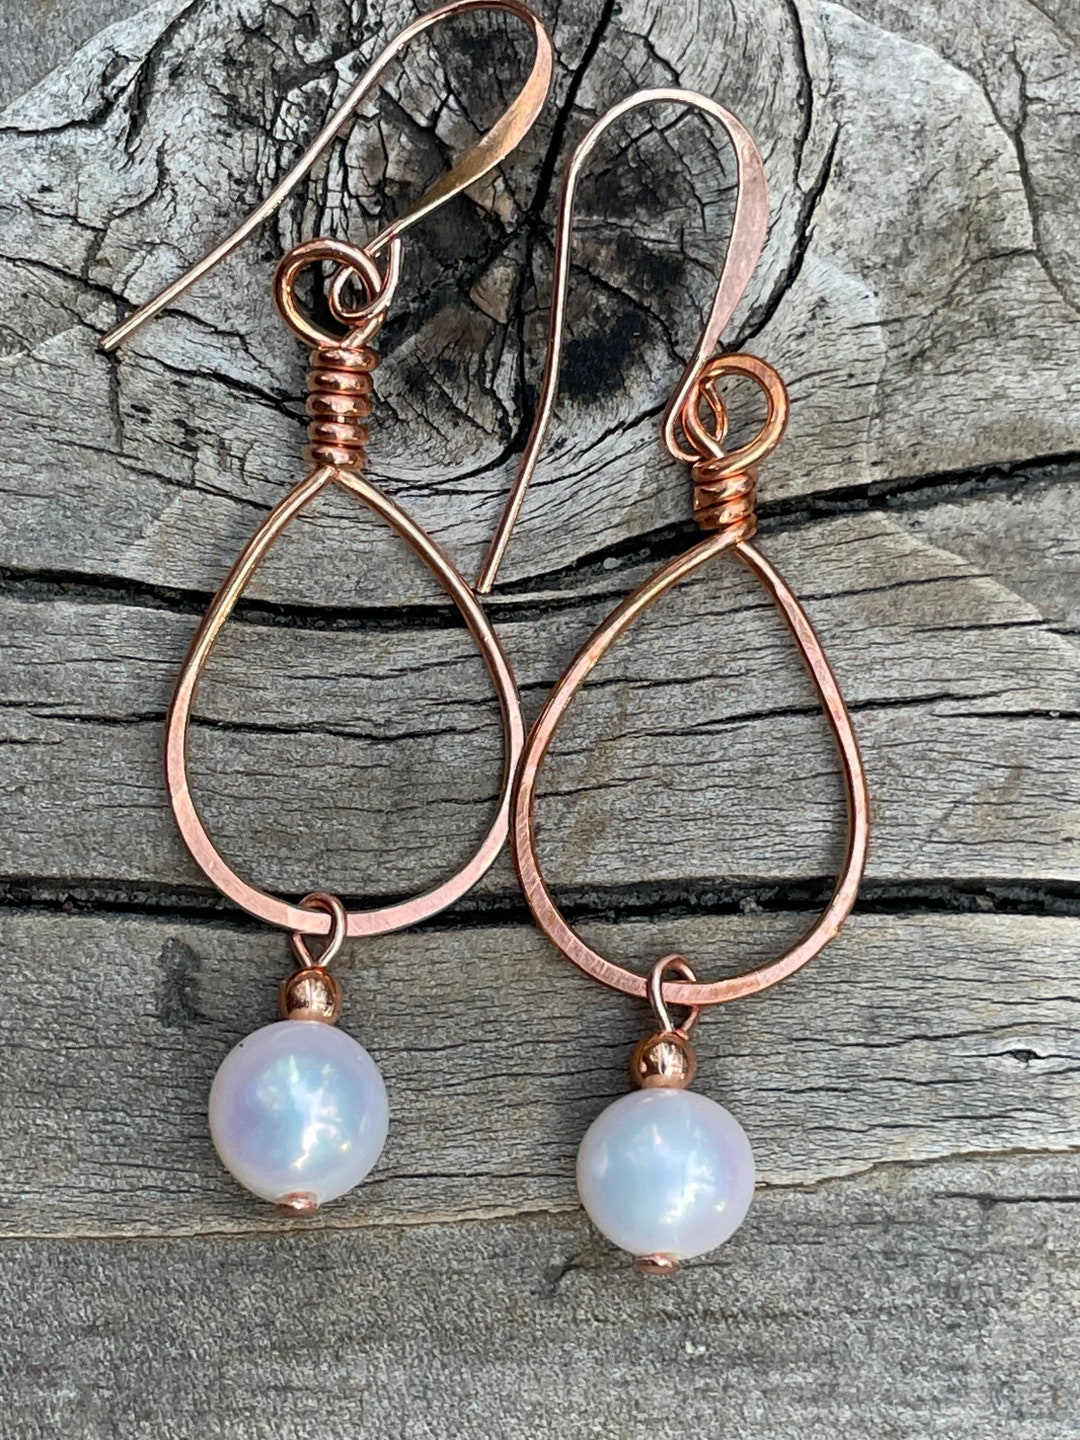 Wire Wrapped Copper Earrings, Copper Earrings, Copper Jewelry, Wire ...